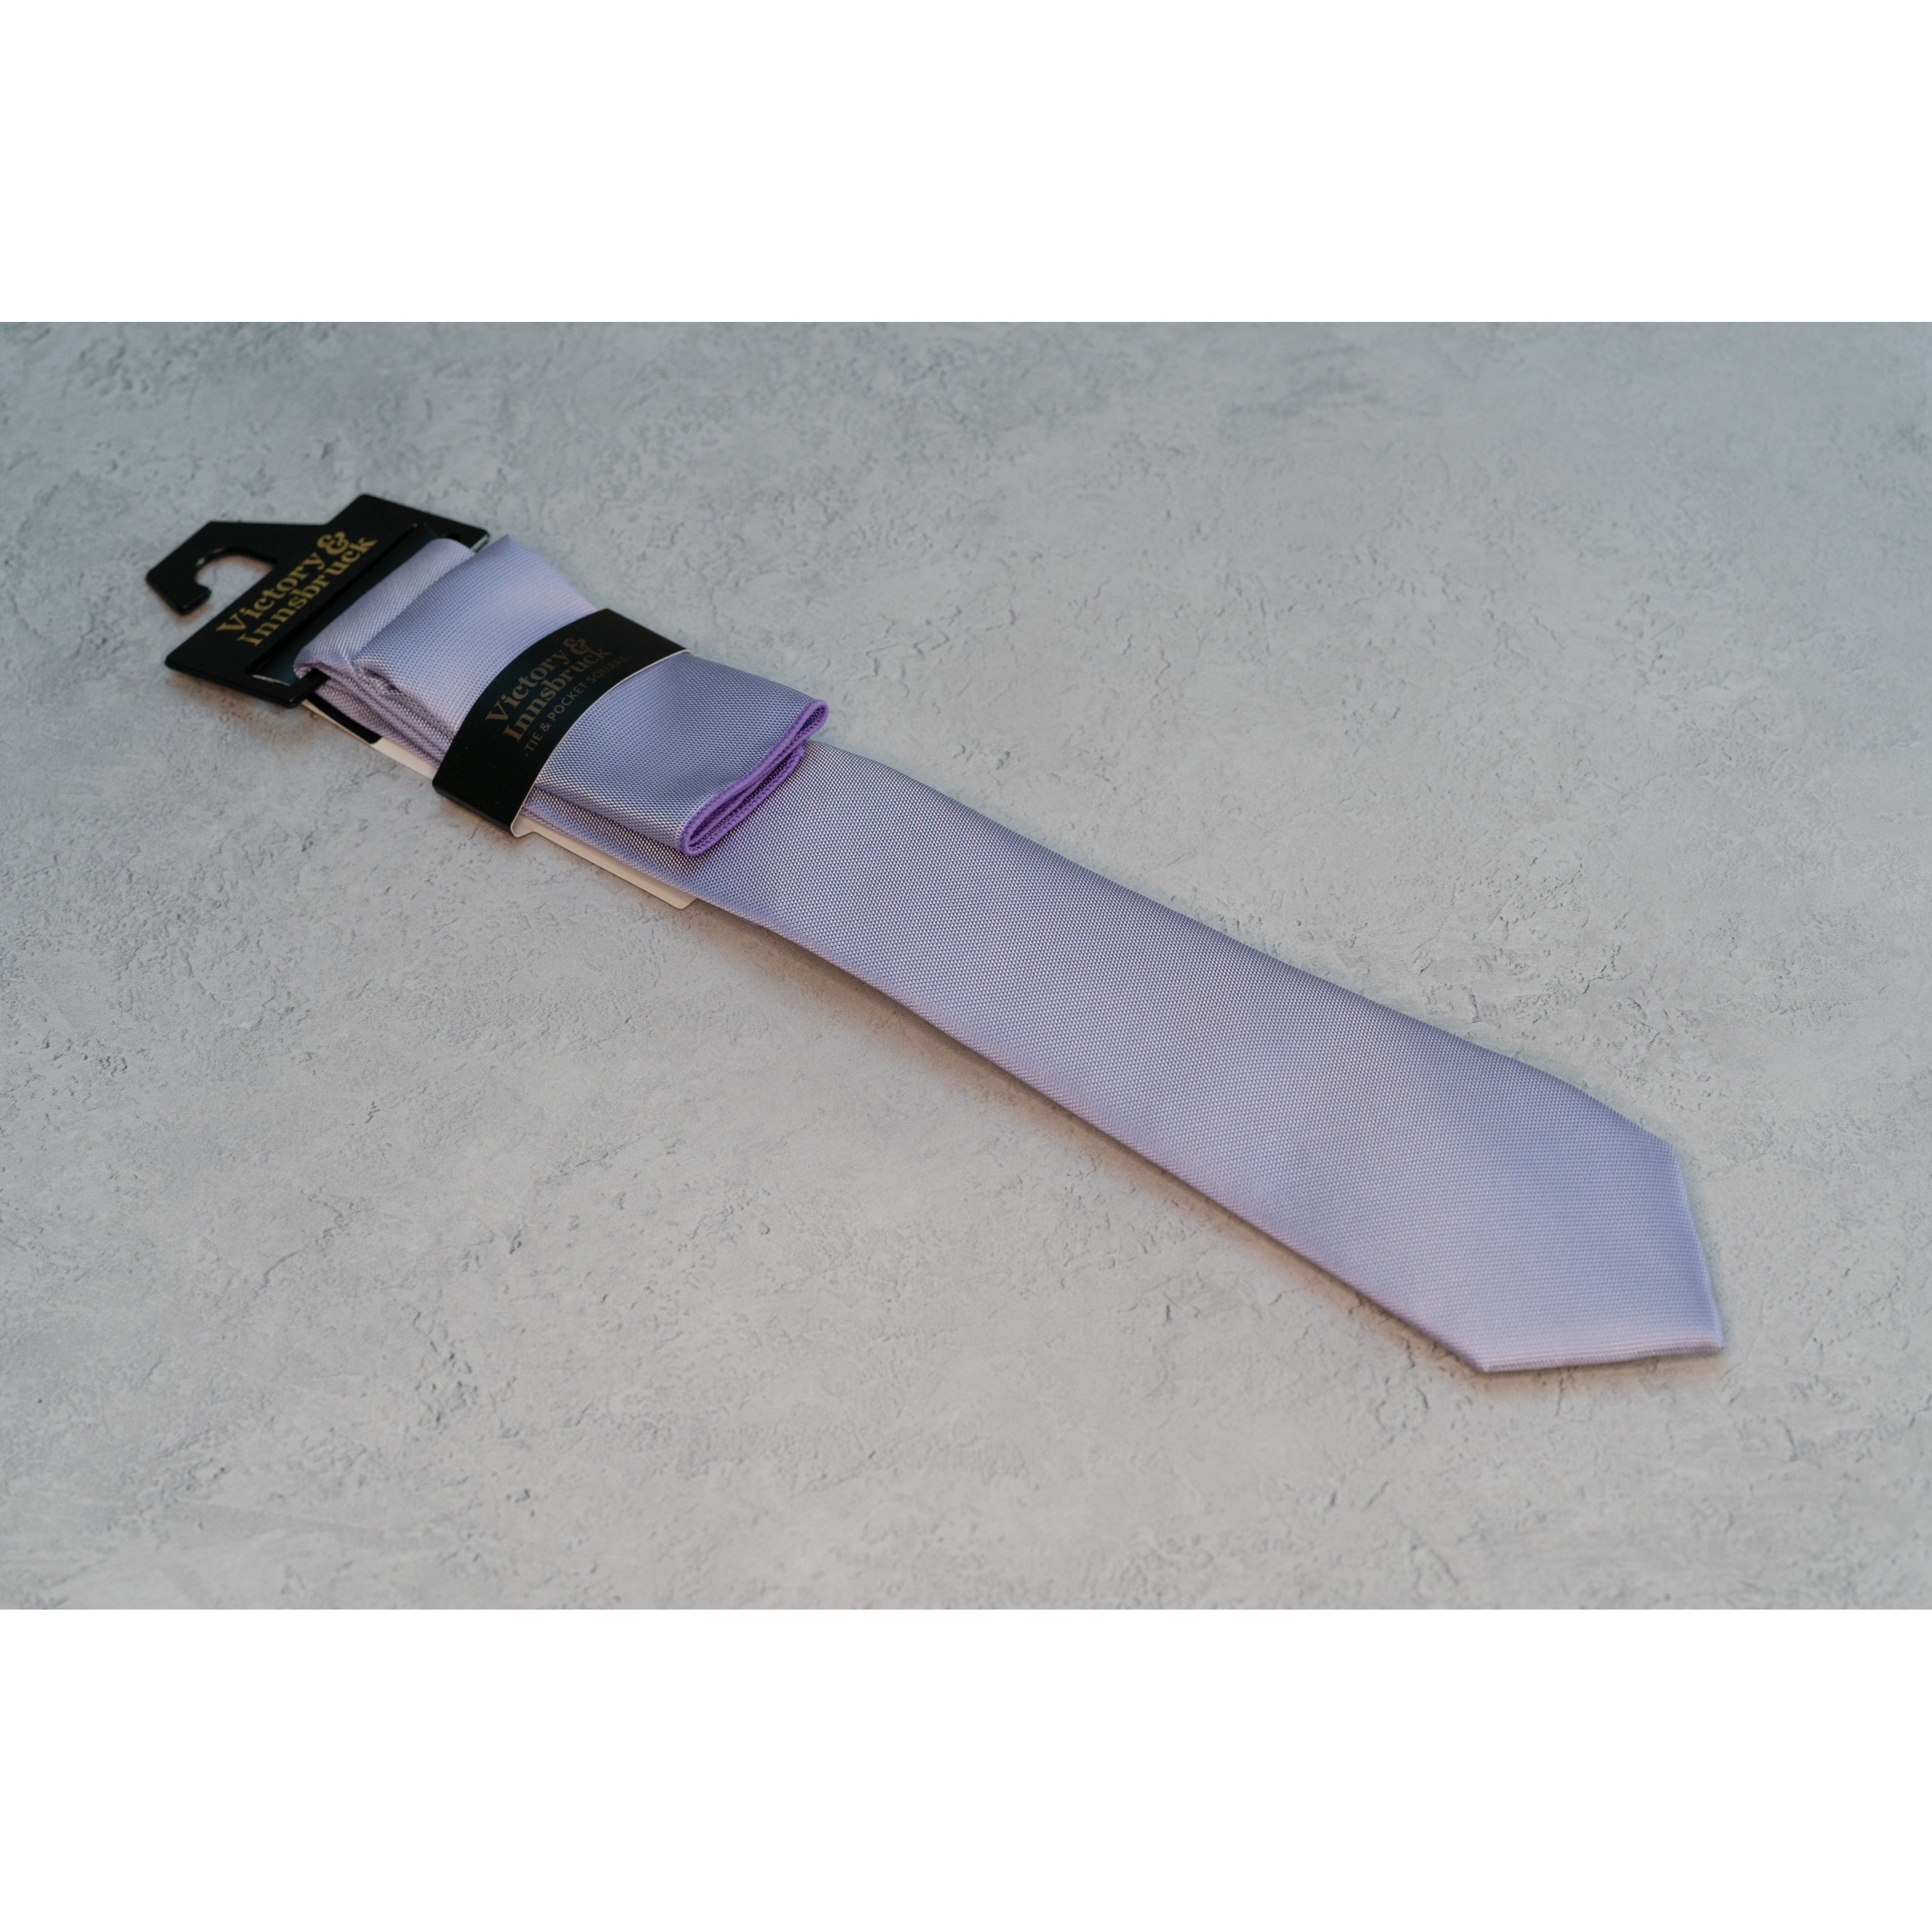 Lavender Textured Tie Set